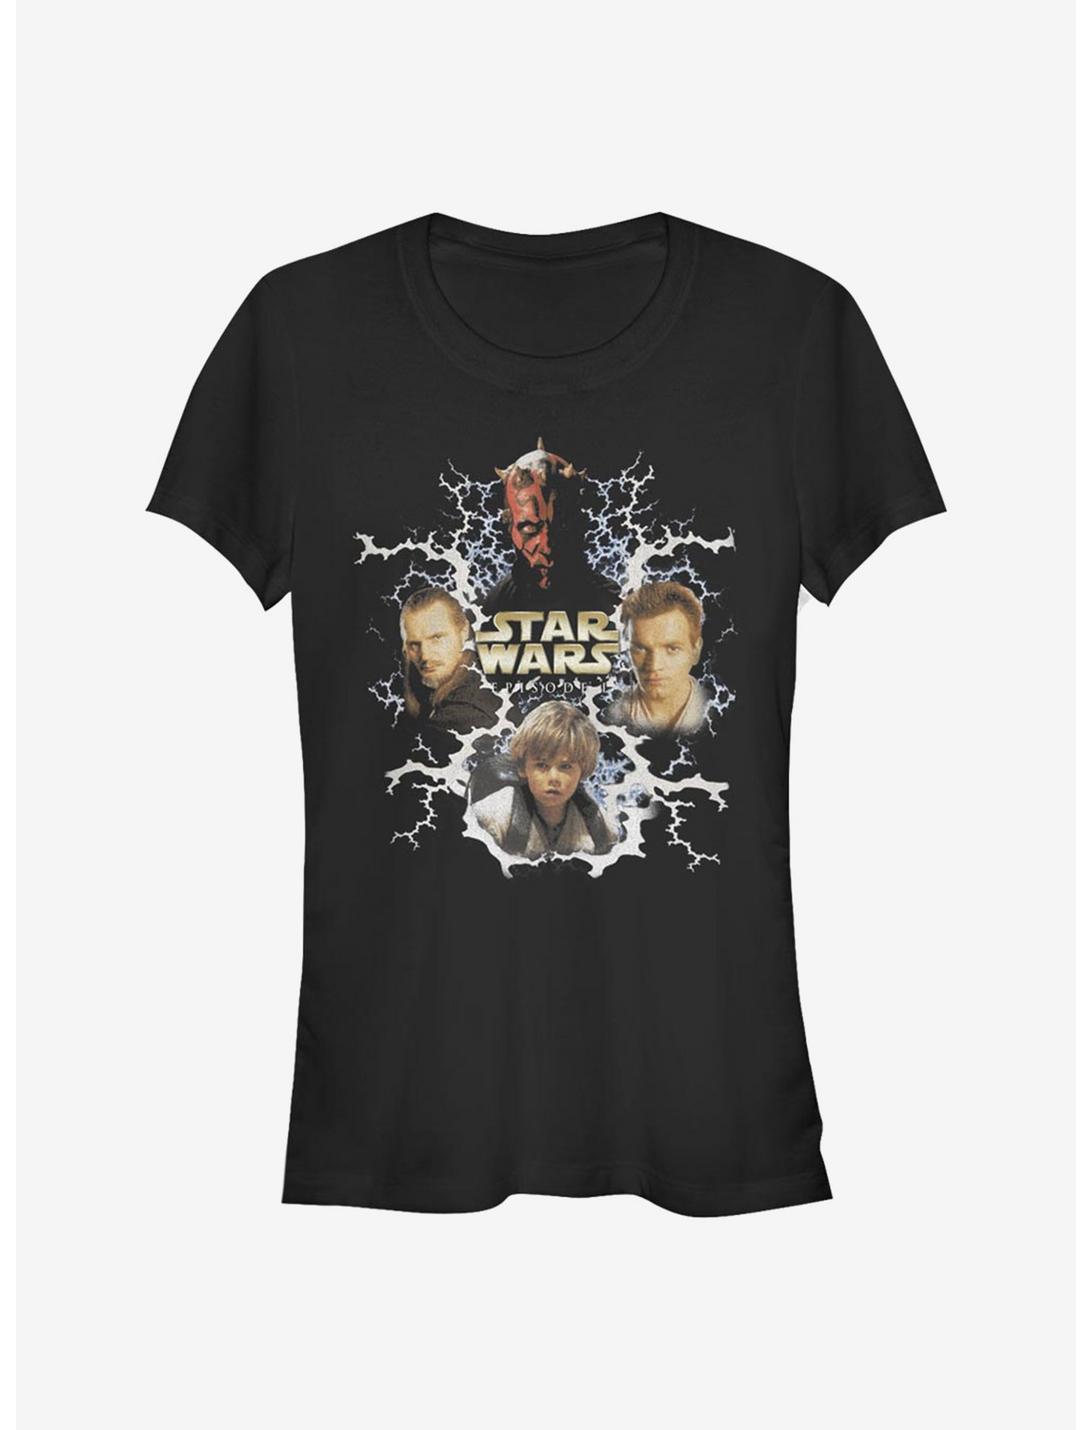 Star Wars Vintage Episode One Girls T-Shirt, BLACK, hi-res